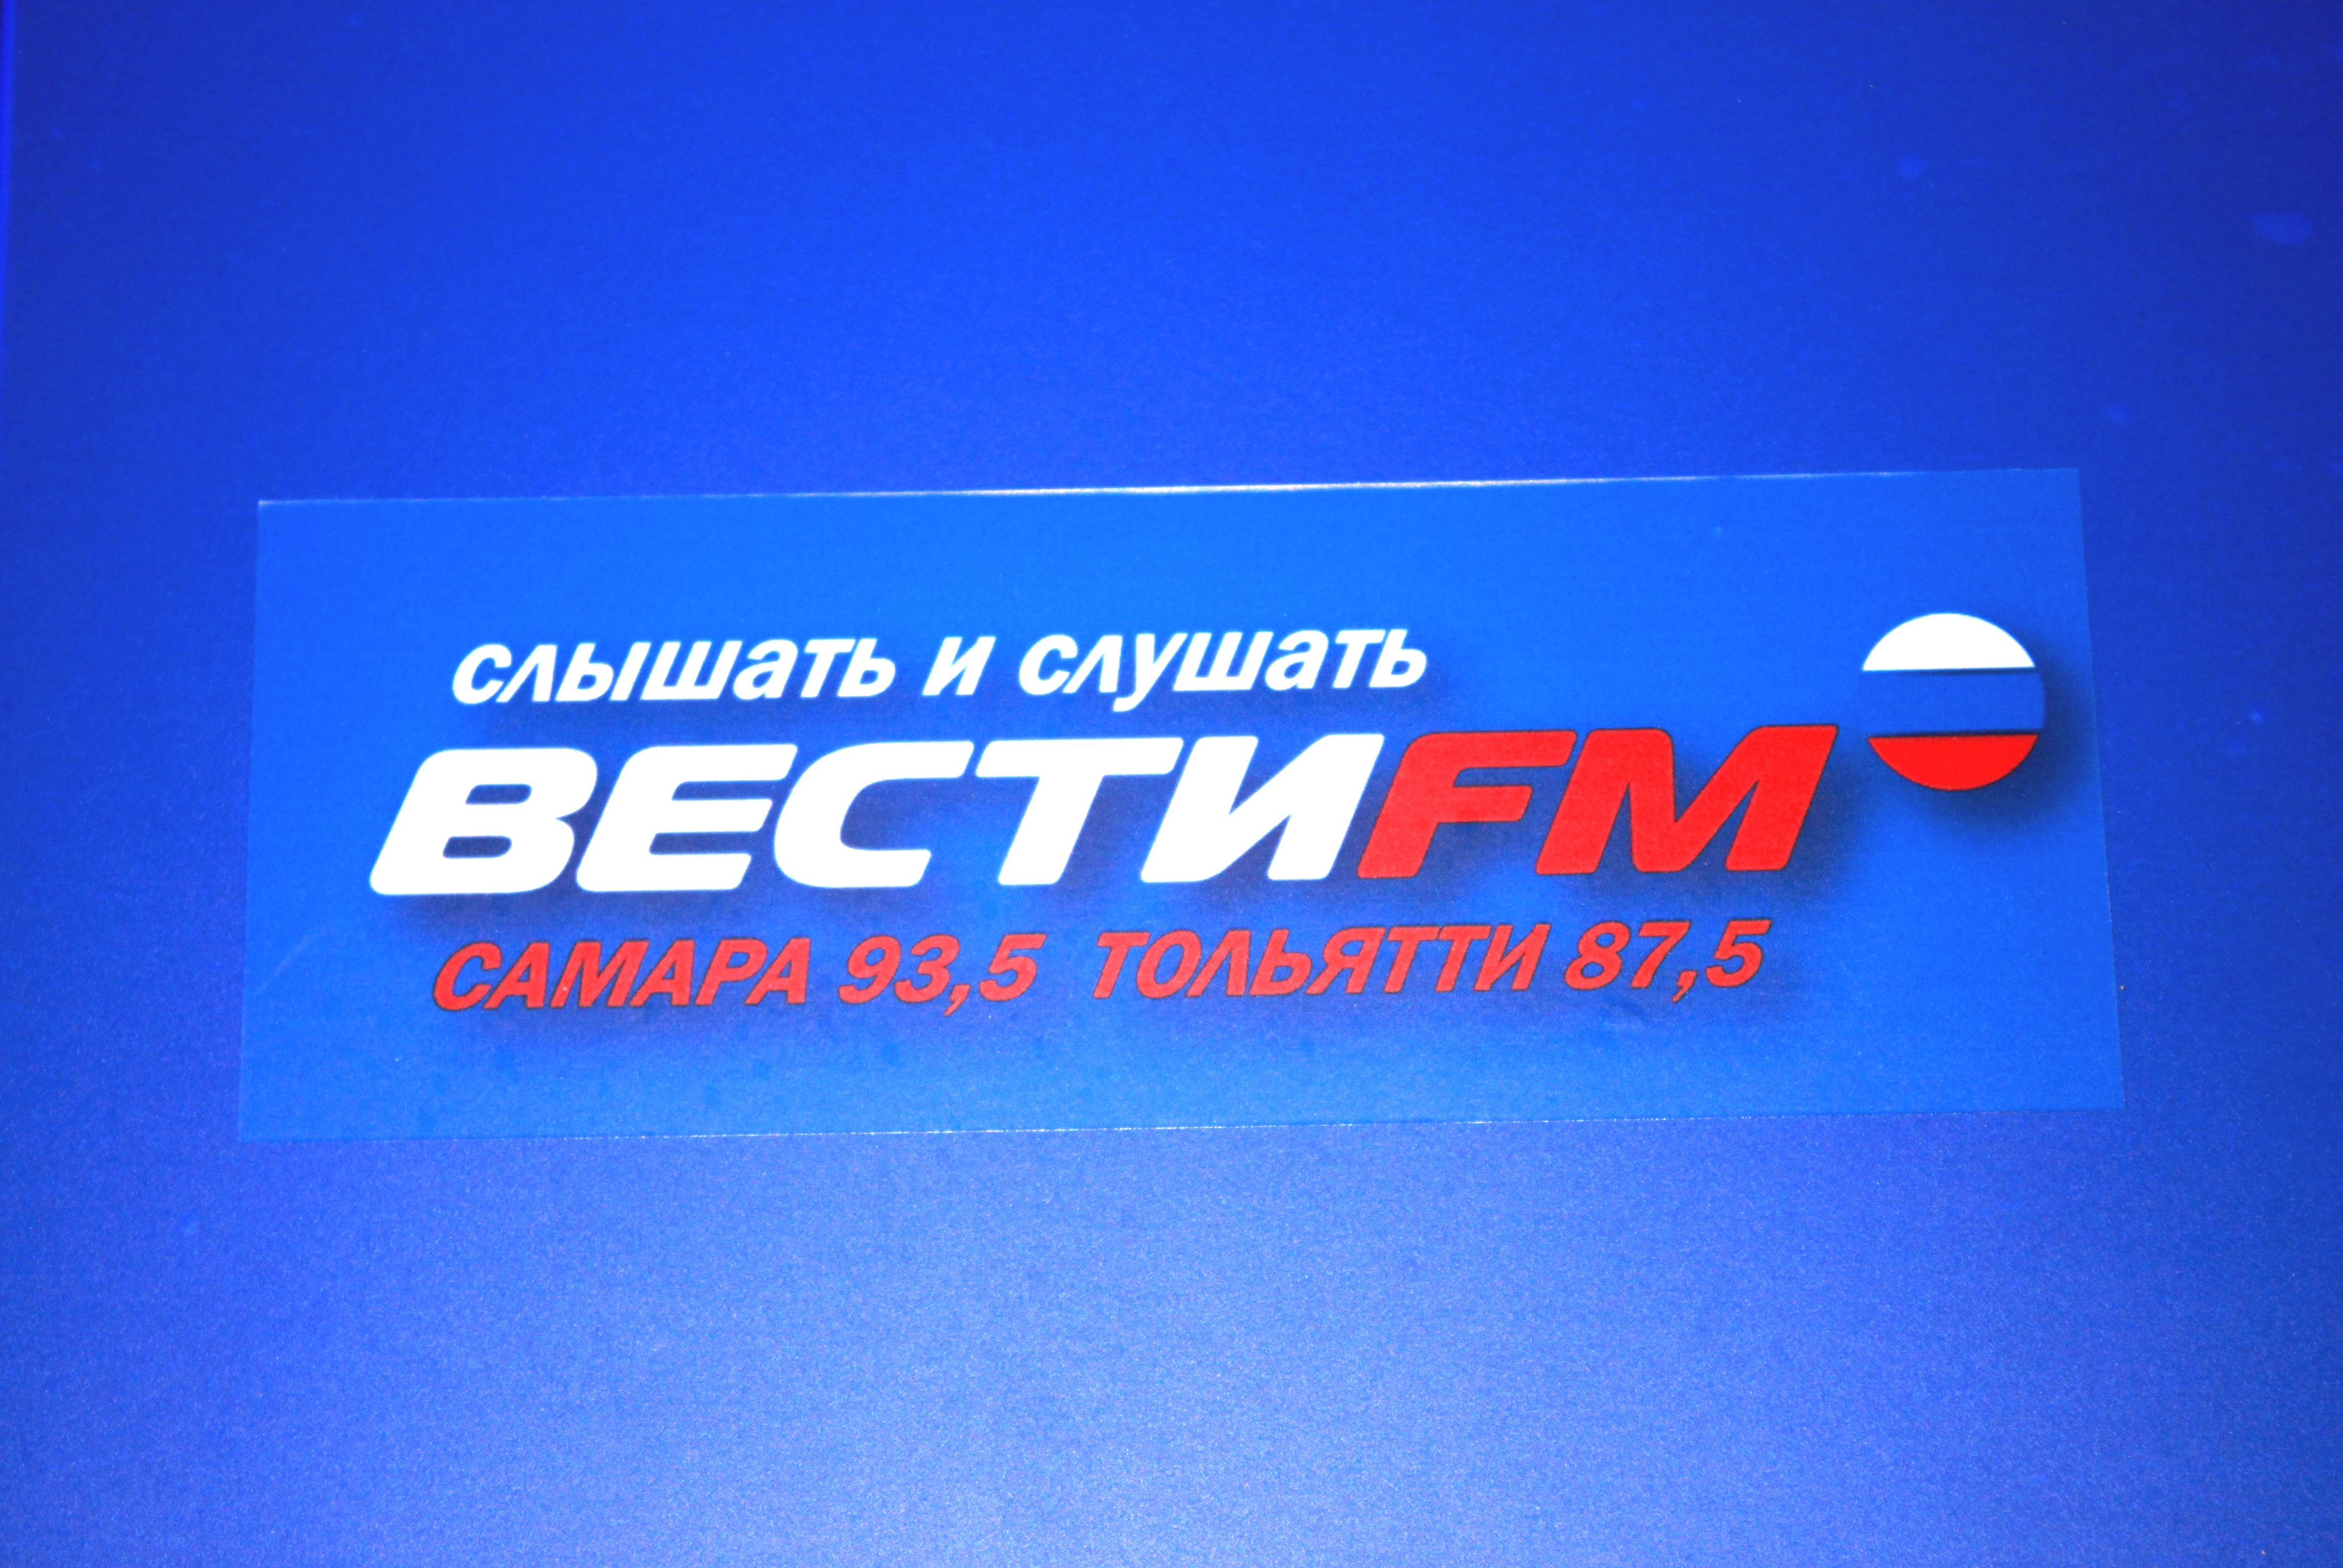 Радио вести фм включить. Вести ФМ. Вести fm логотип. Логотип радиостанции вести ФМ. Вести ФМ студия.